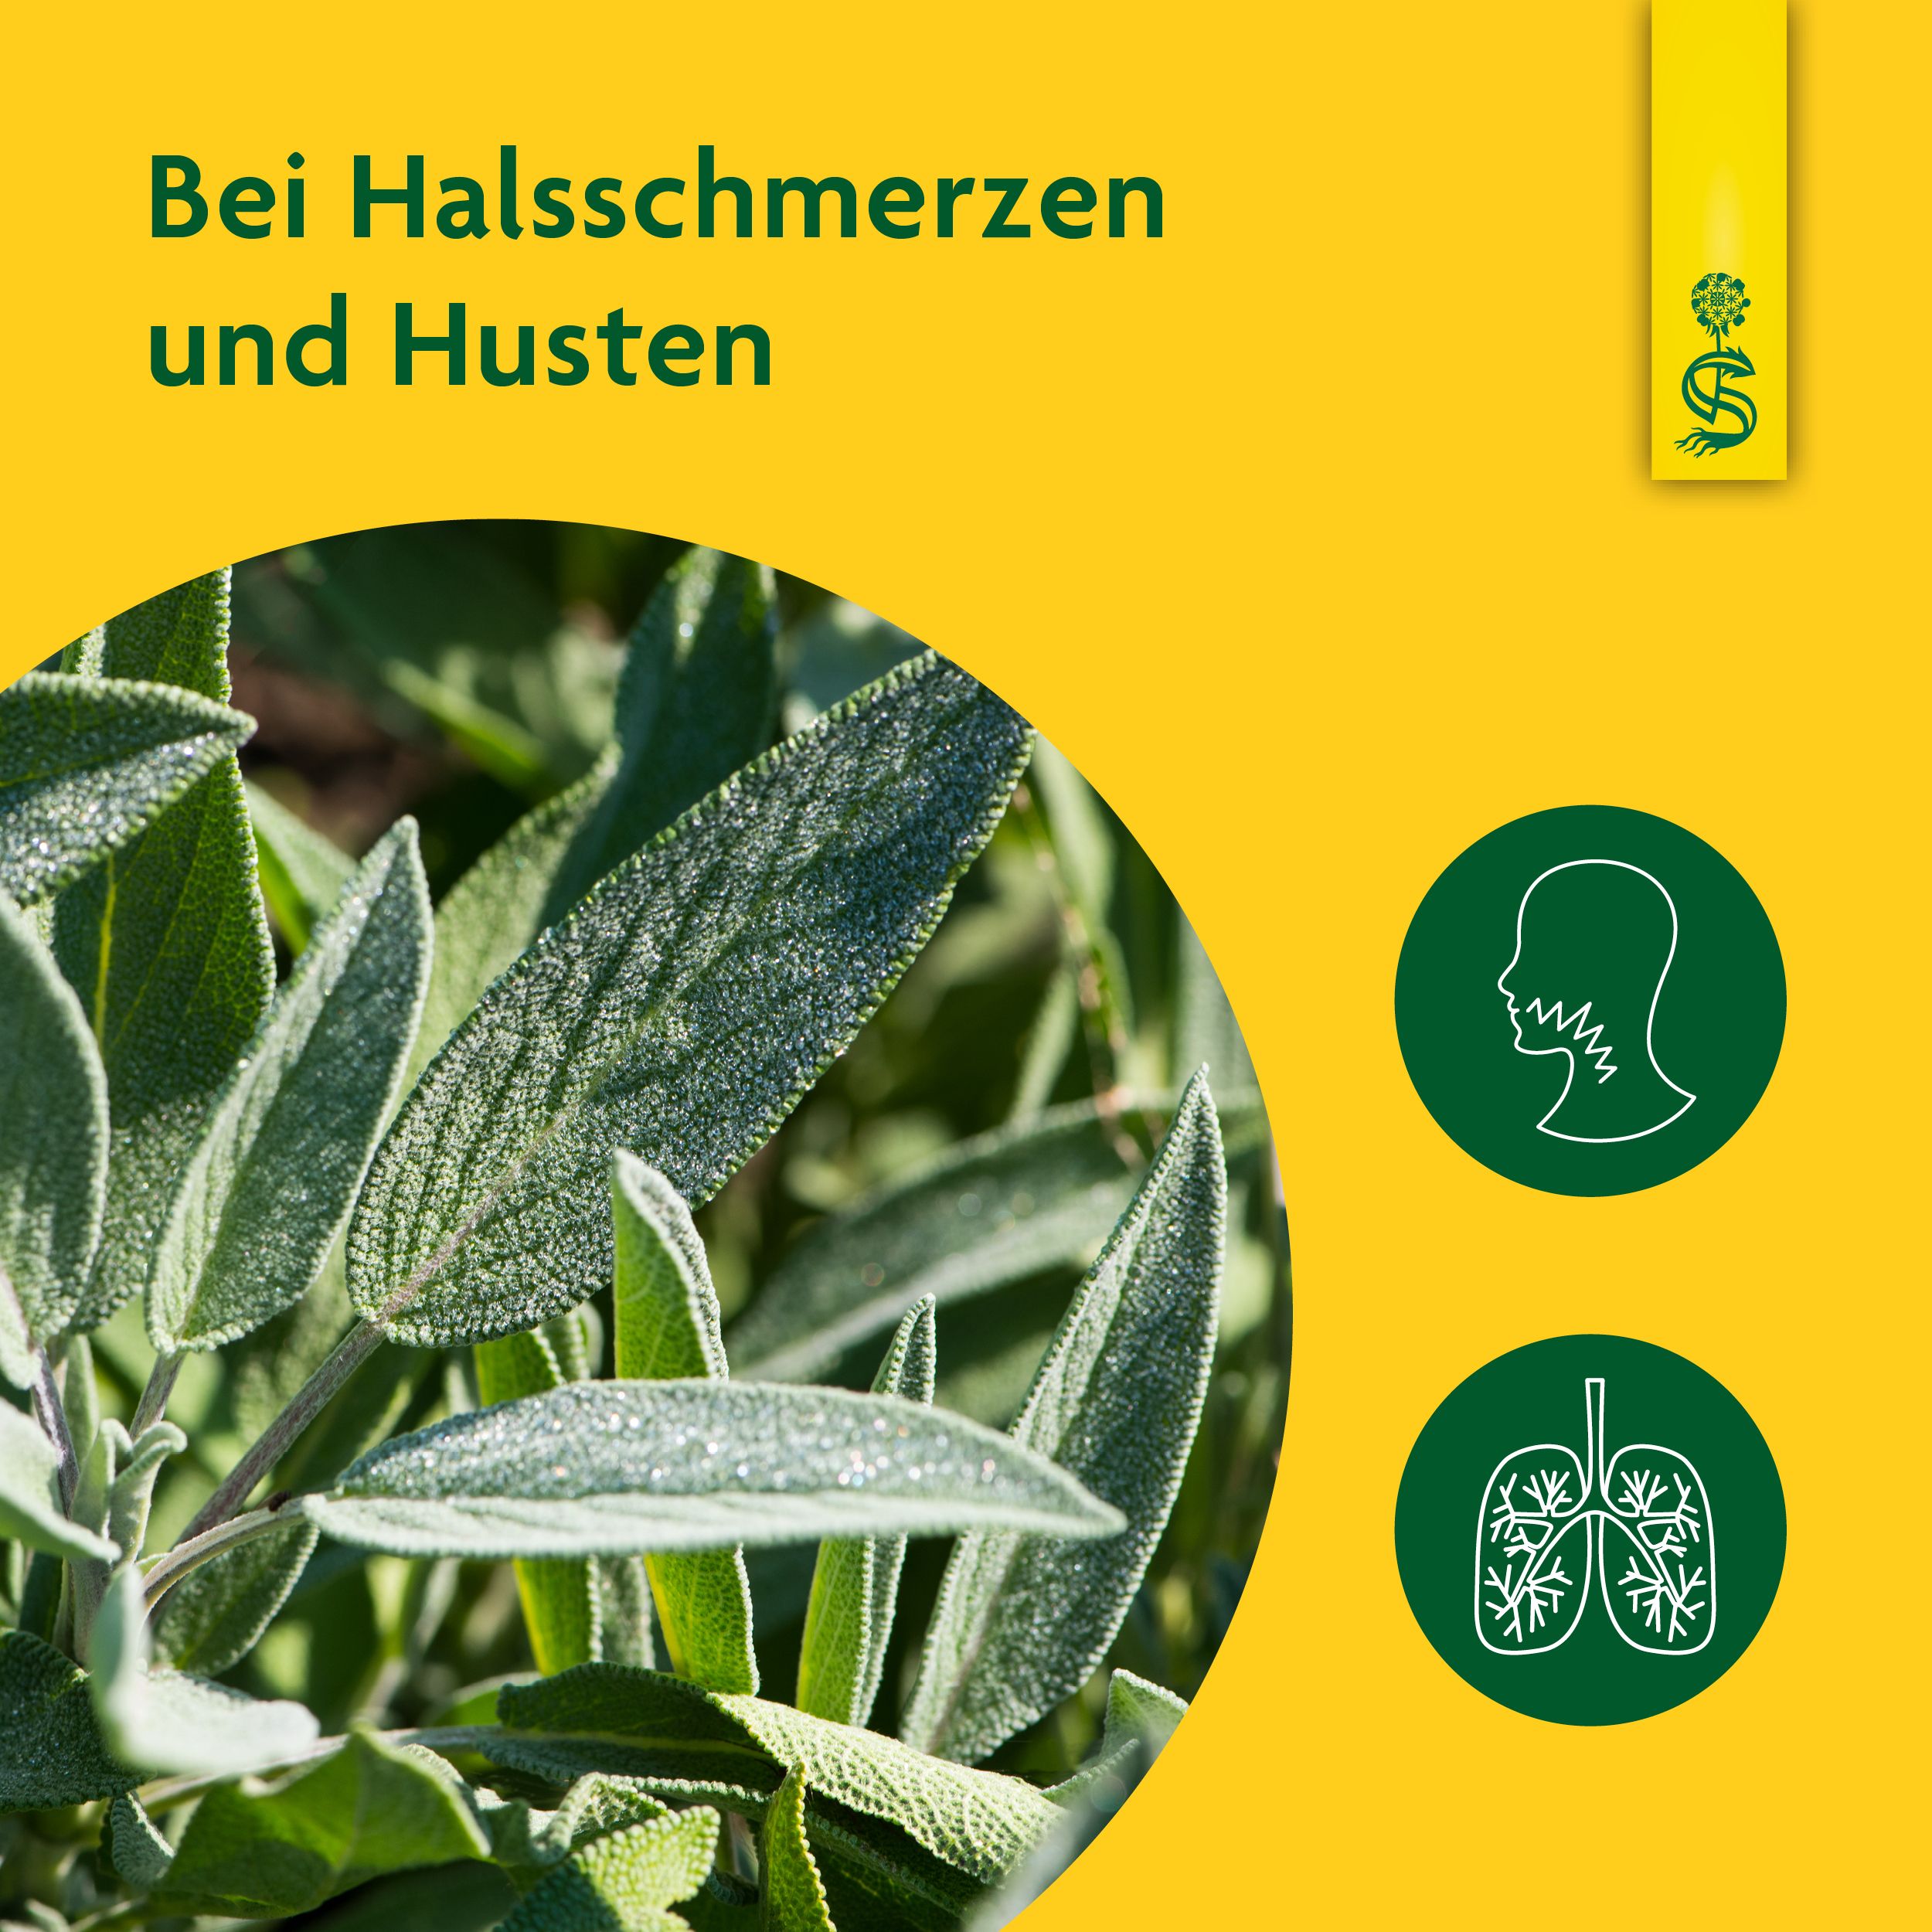 Schoenenberger® naturreiner Heilpflanzensaft Salbei